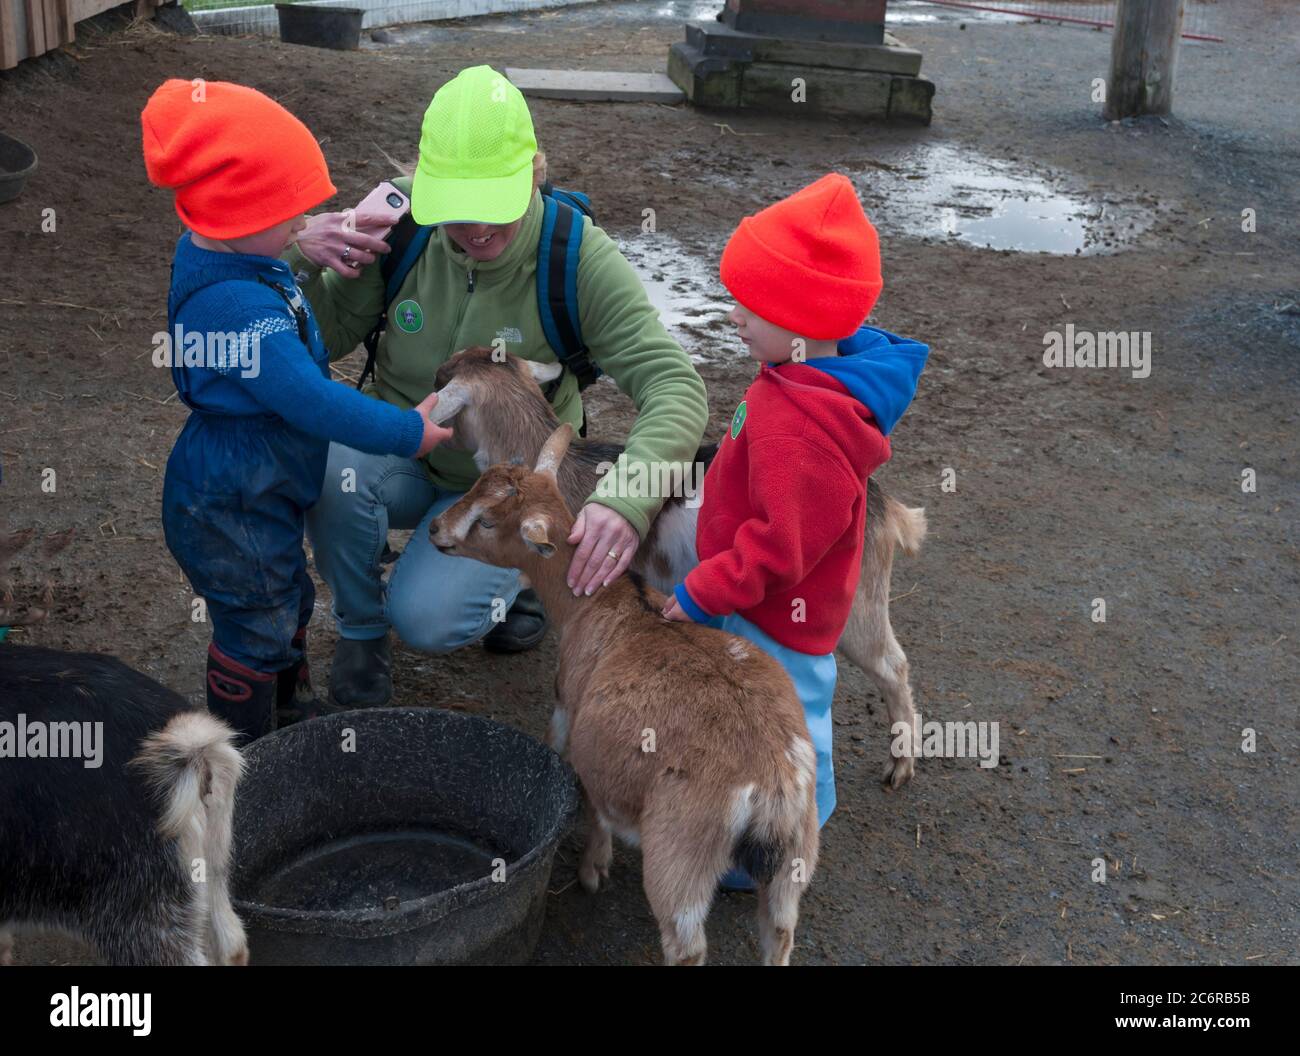 Ein Erwachsener und zwei Kinder streicheln eine Ziege auf einer kinderfreundlichen Farm in Nova Scotia, Kanada. Kein Zoo. Ein kinderfreundlicher Bereich auf einem Bauernhof. Stockfoto